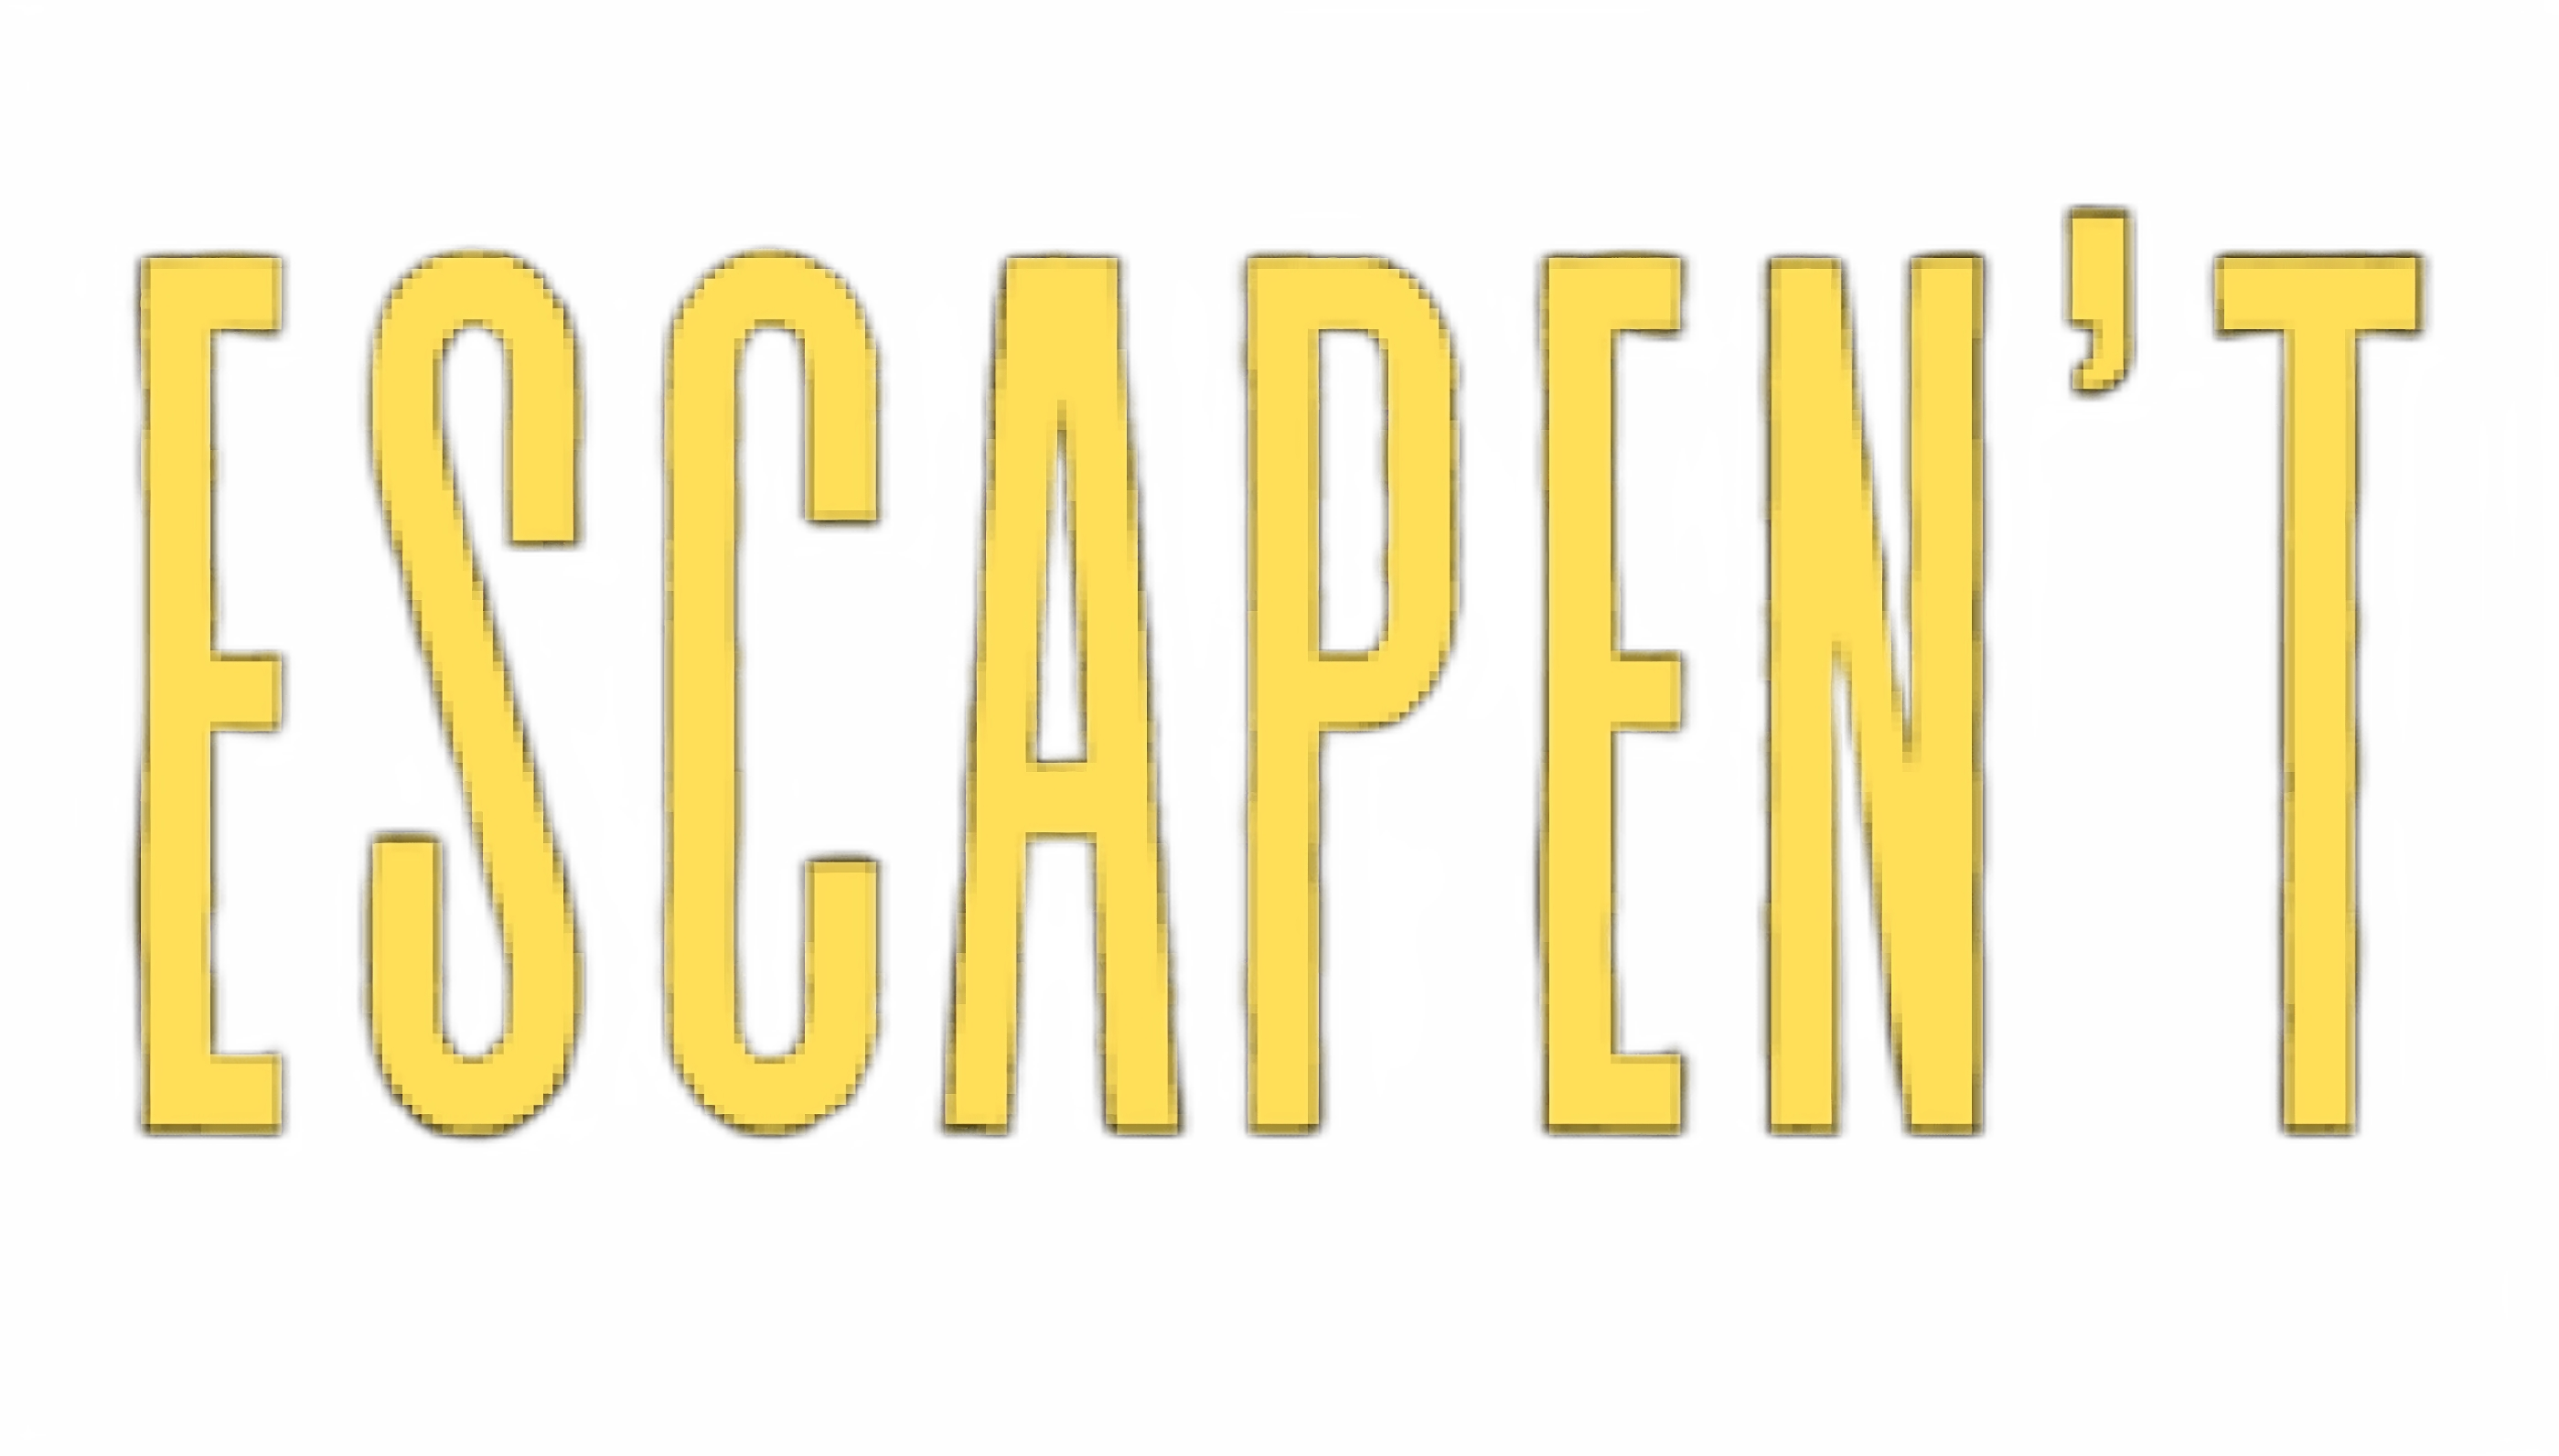 Escapen't: The delapidated facility